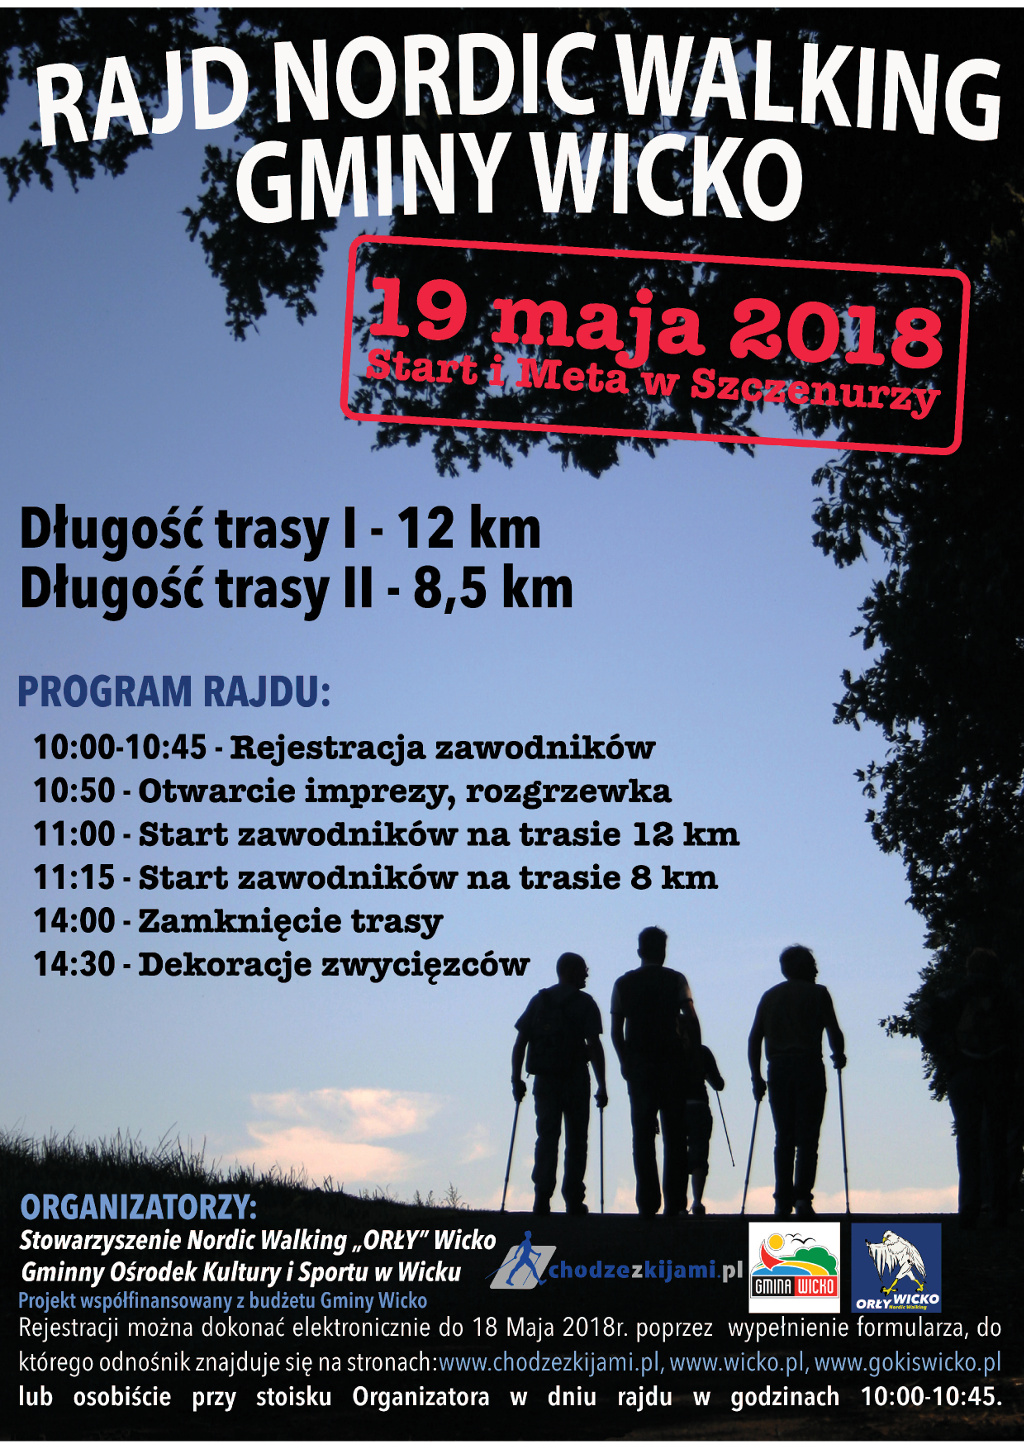 Plakat Rajd Nordic Walking Gminy Wicko 2018, zamierający wyżej umieszczone informacje.